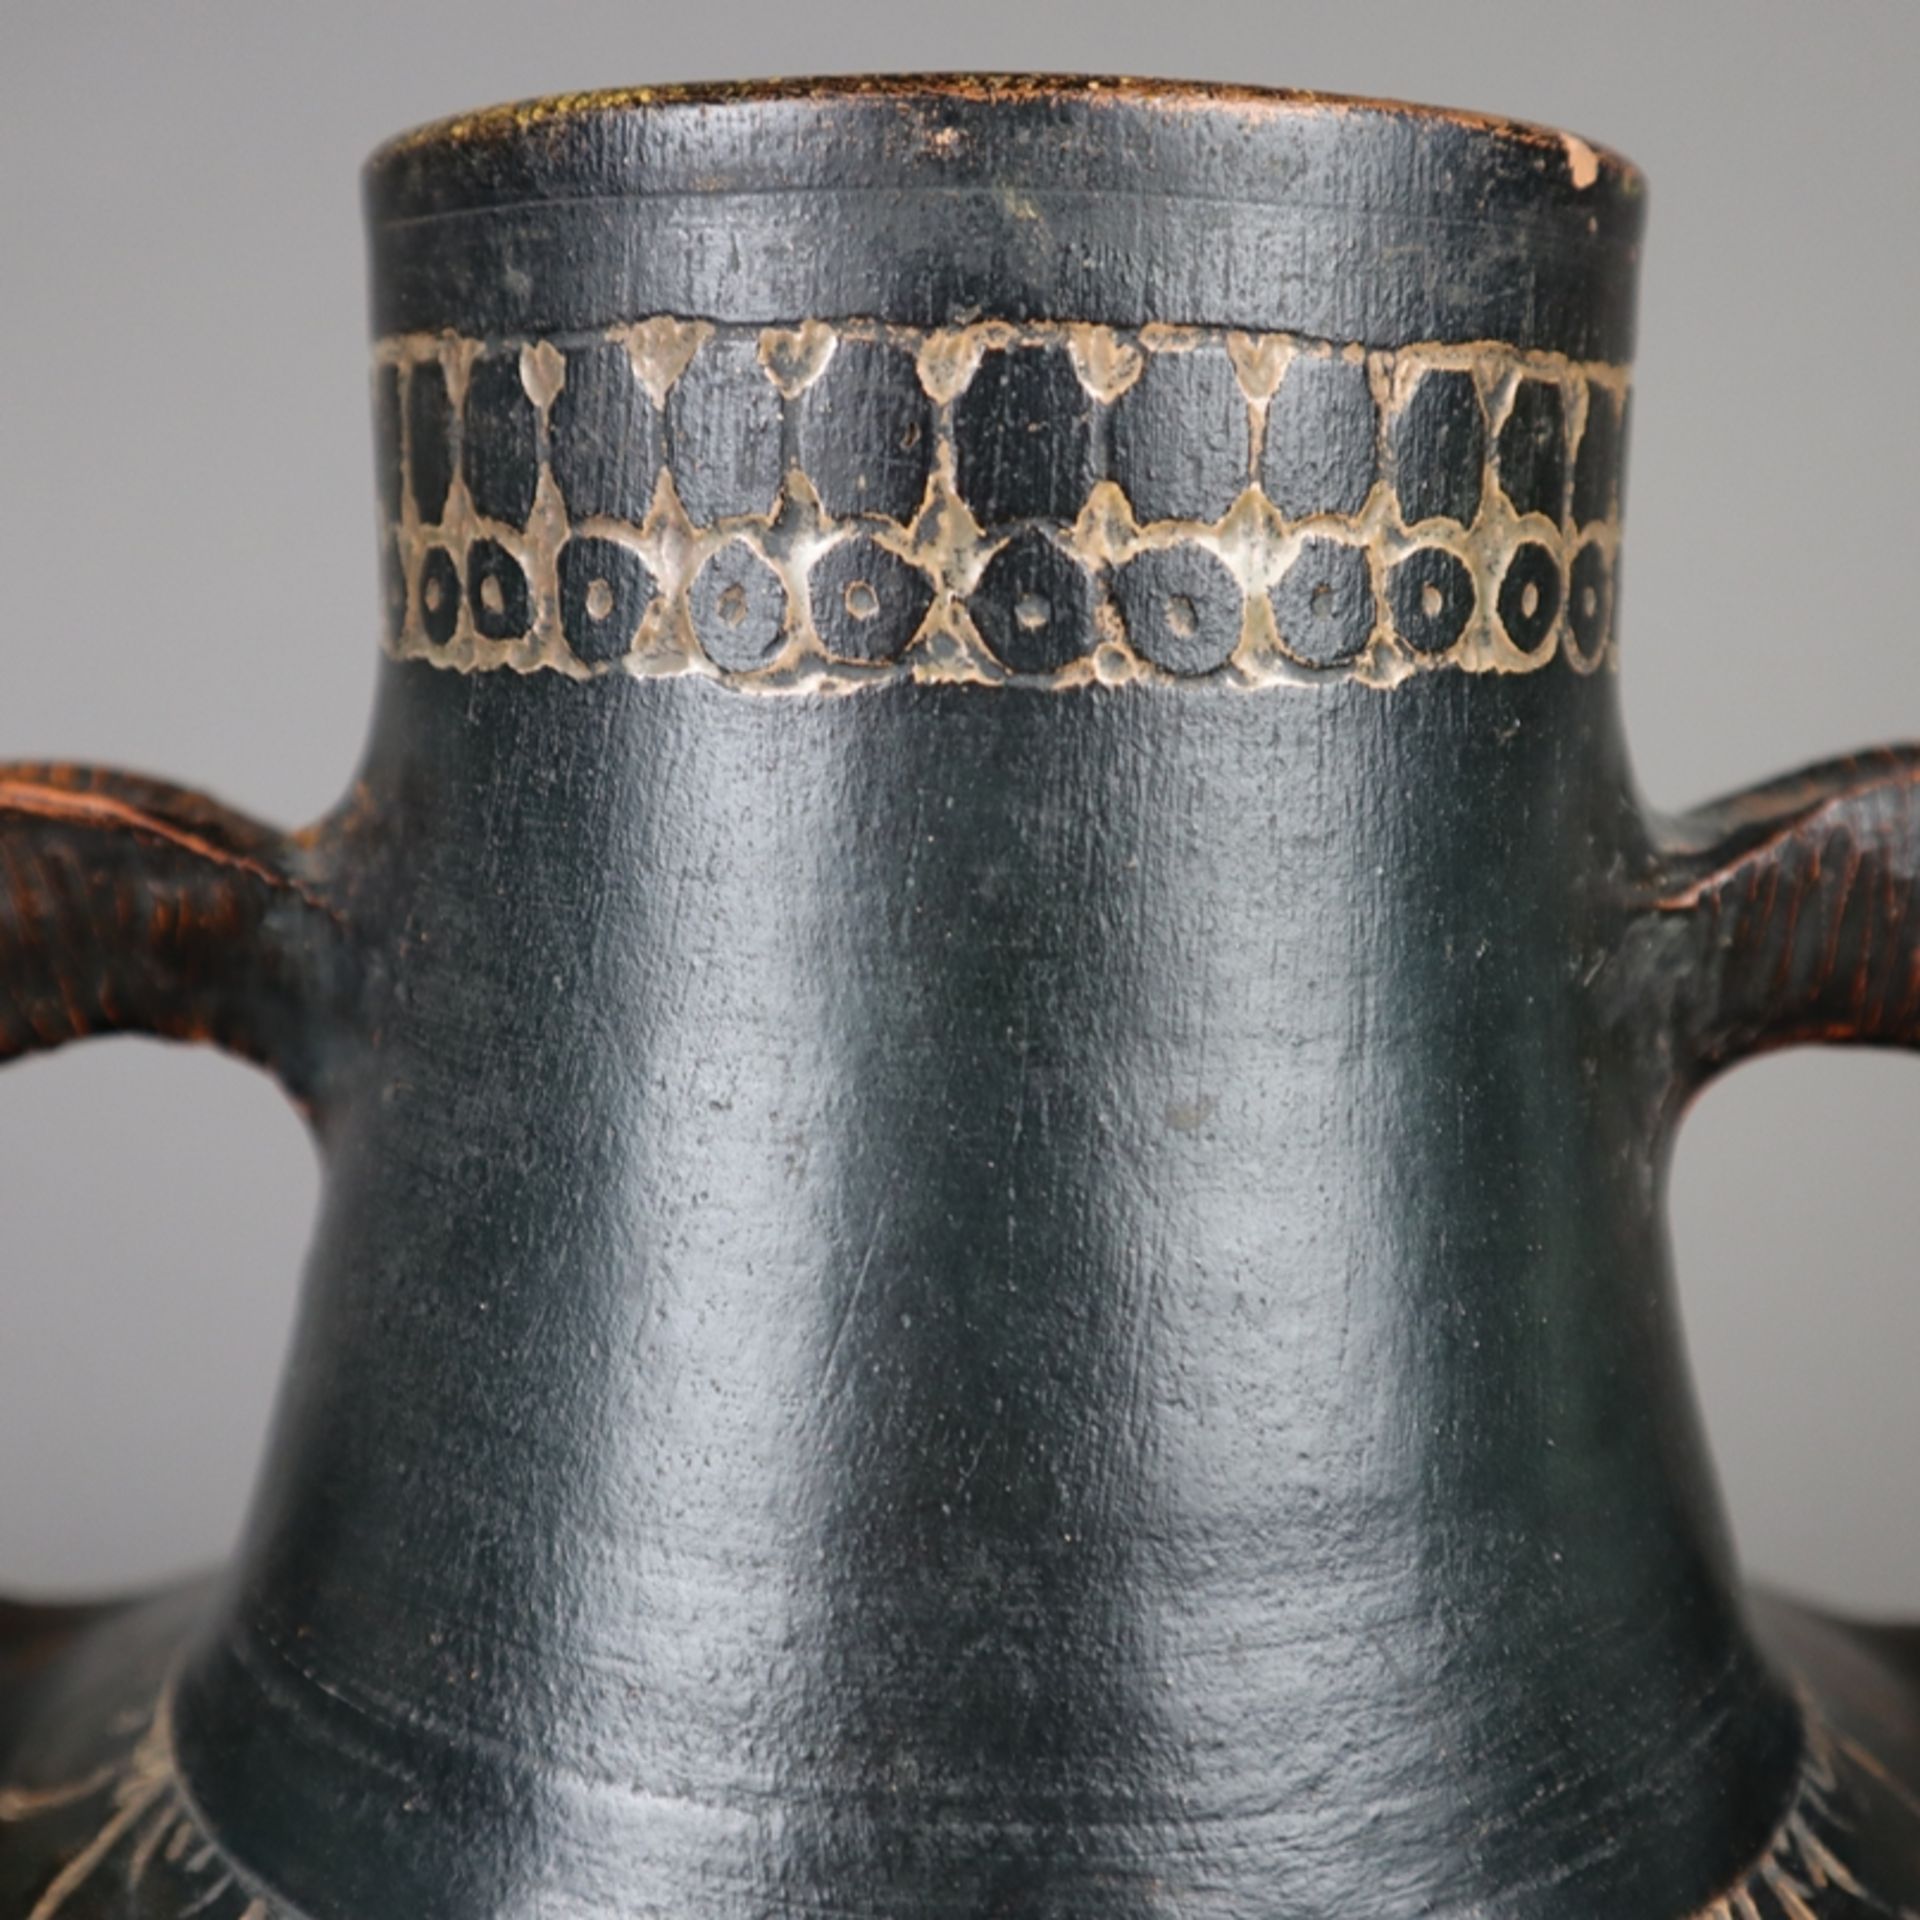 Doppelhenkel-Vase - wohl Balkan, 19.Jh. oder älter, Ton, braun glasiert, umlaufend Ornamentborte, s - Bild 3 aus 9